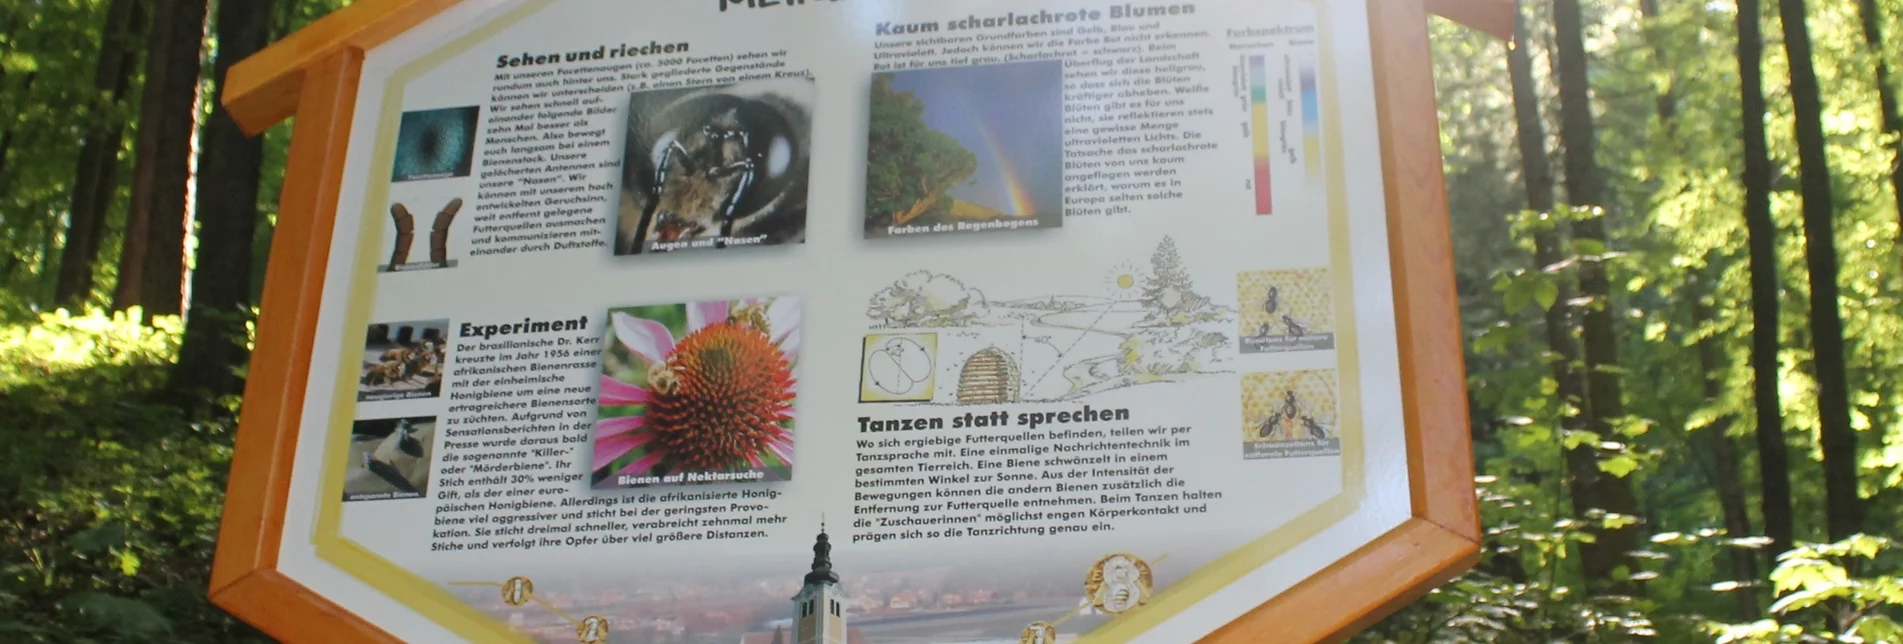 Themen- und Lehrpfad Bienenlehrpfad - "Bienen-aktiv-Lehrpfad" St. Ruprecht an der Raab - Touren-Impression #1 | © Oststeiermark Tourismus